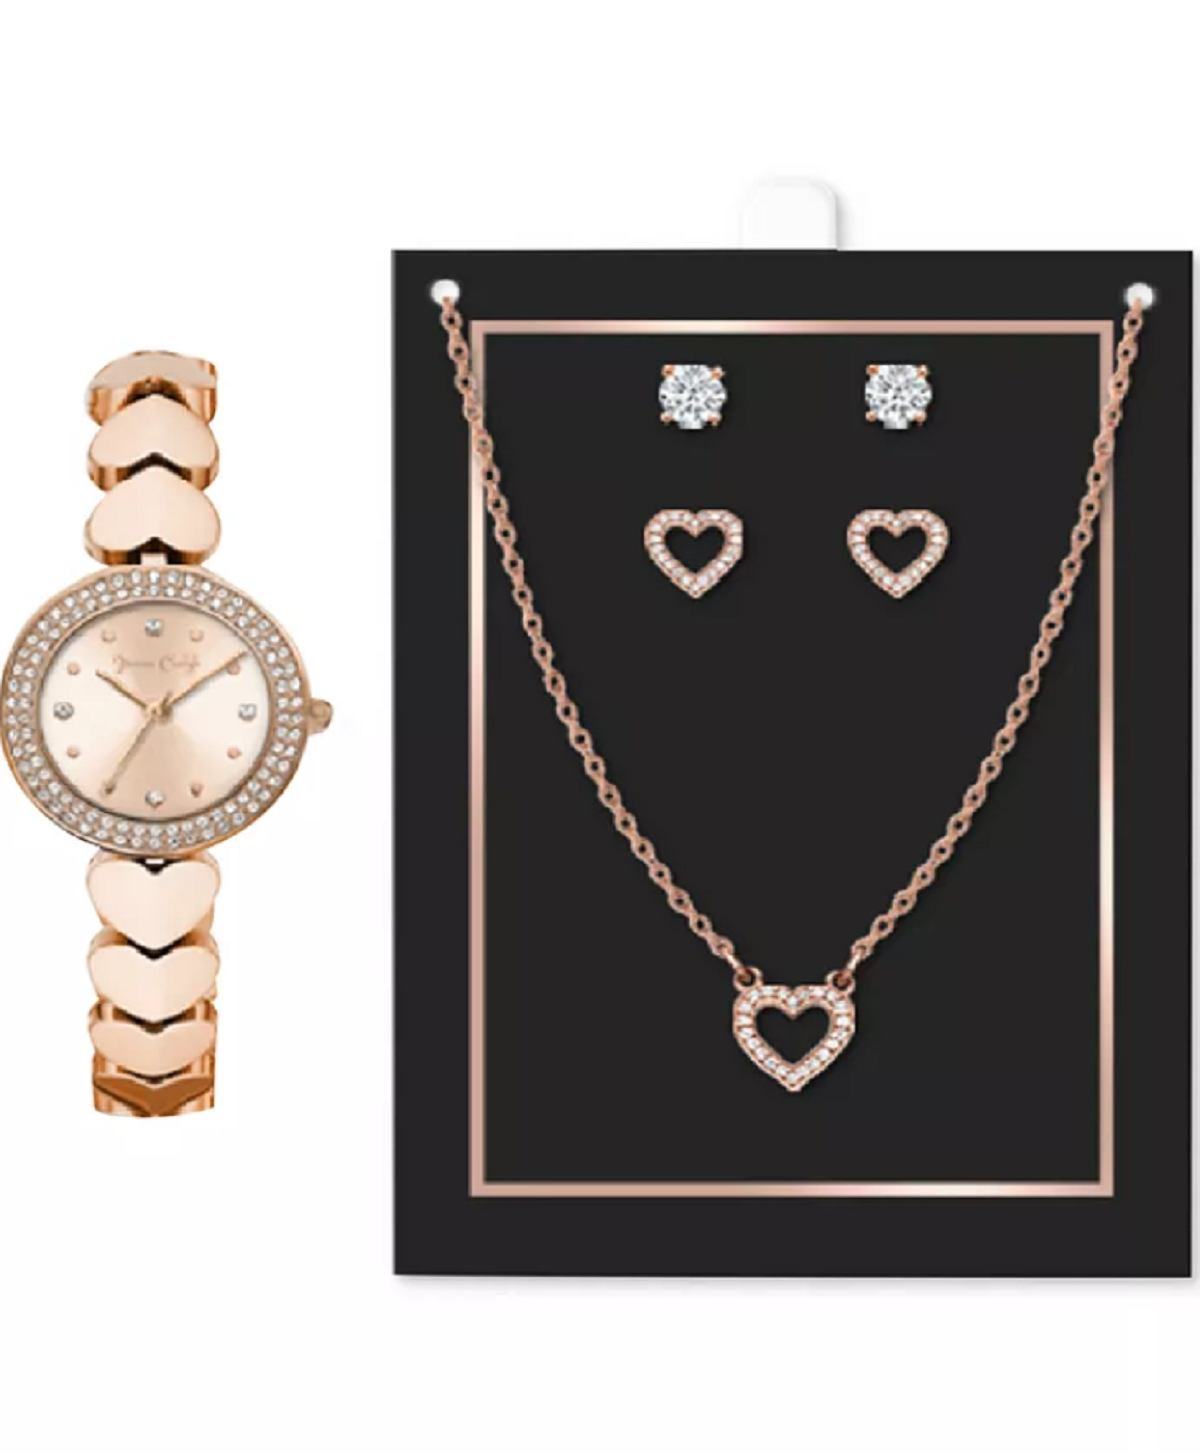 Women's Heart-Link Bracelet Watch 28mm Jewelry Gift Set, happy v day